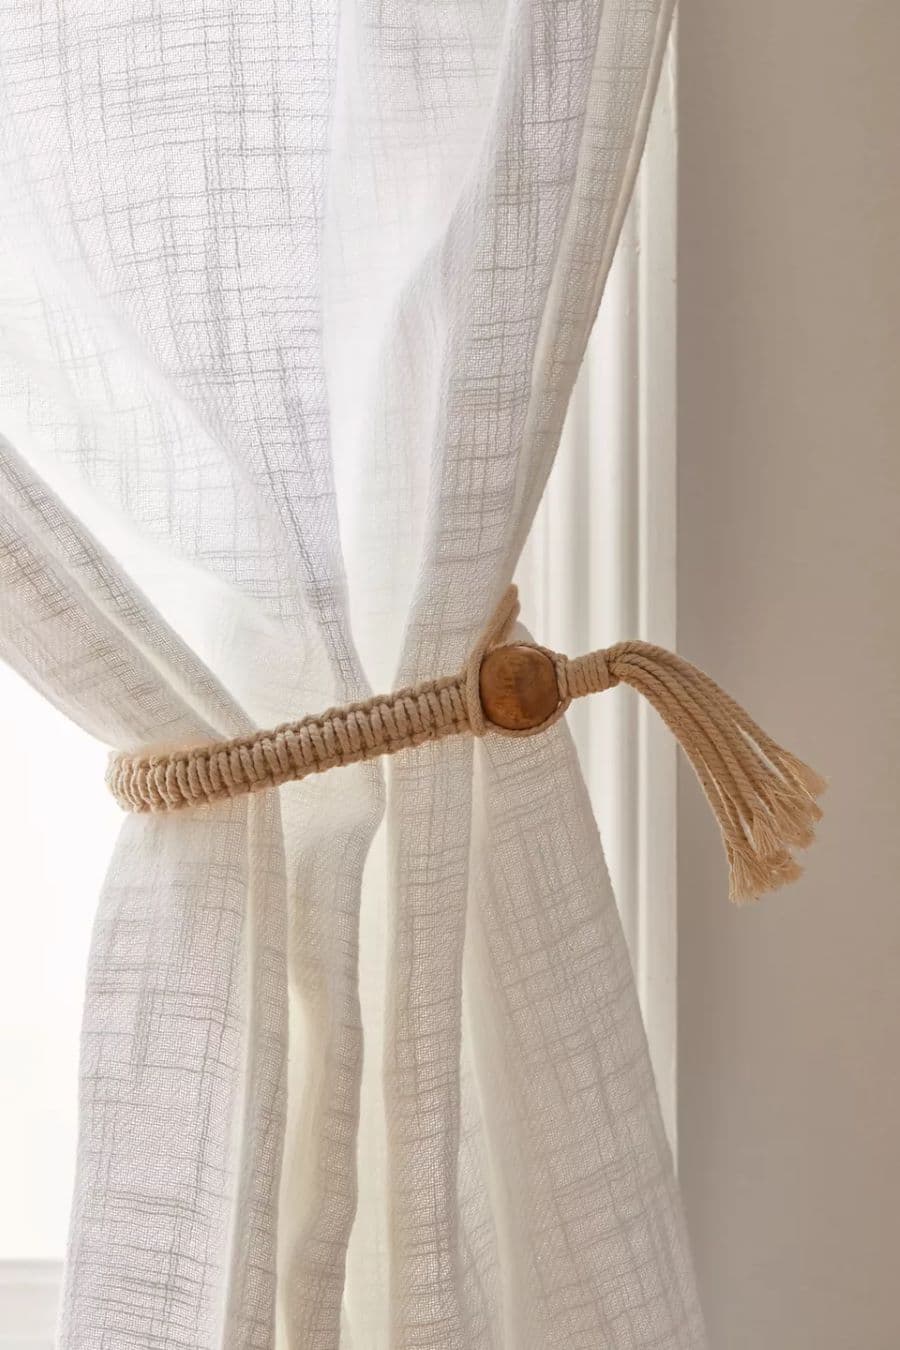 Detalle de cortina visillo. Tela delgada blanca con una amarra de cordel de algodón tejida y una borla de madera.